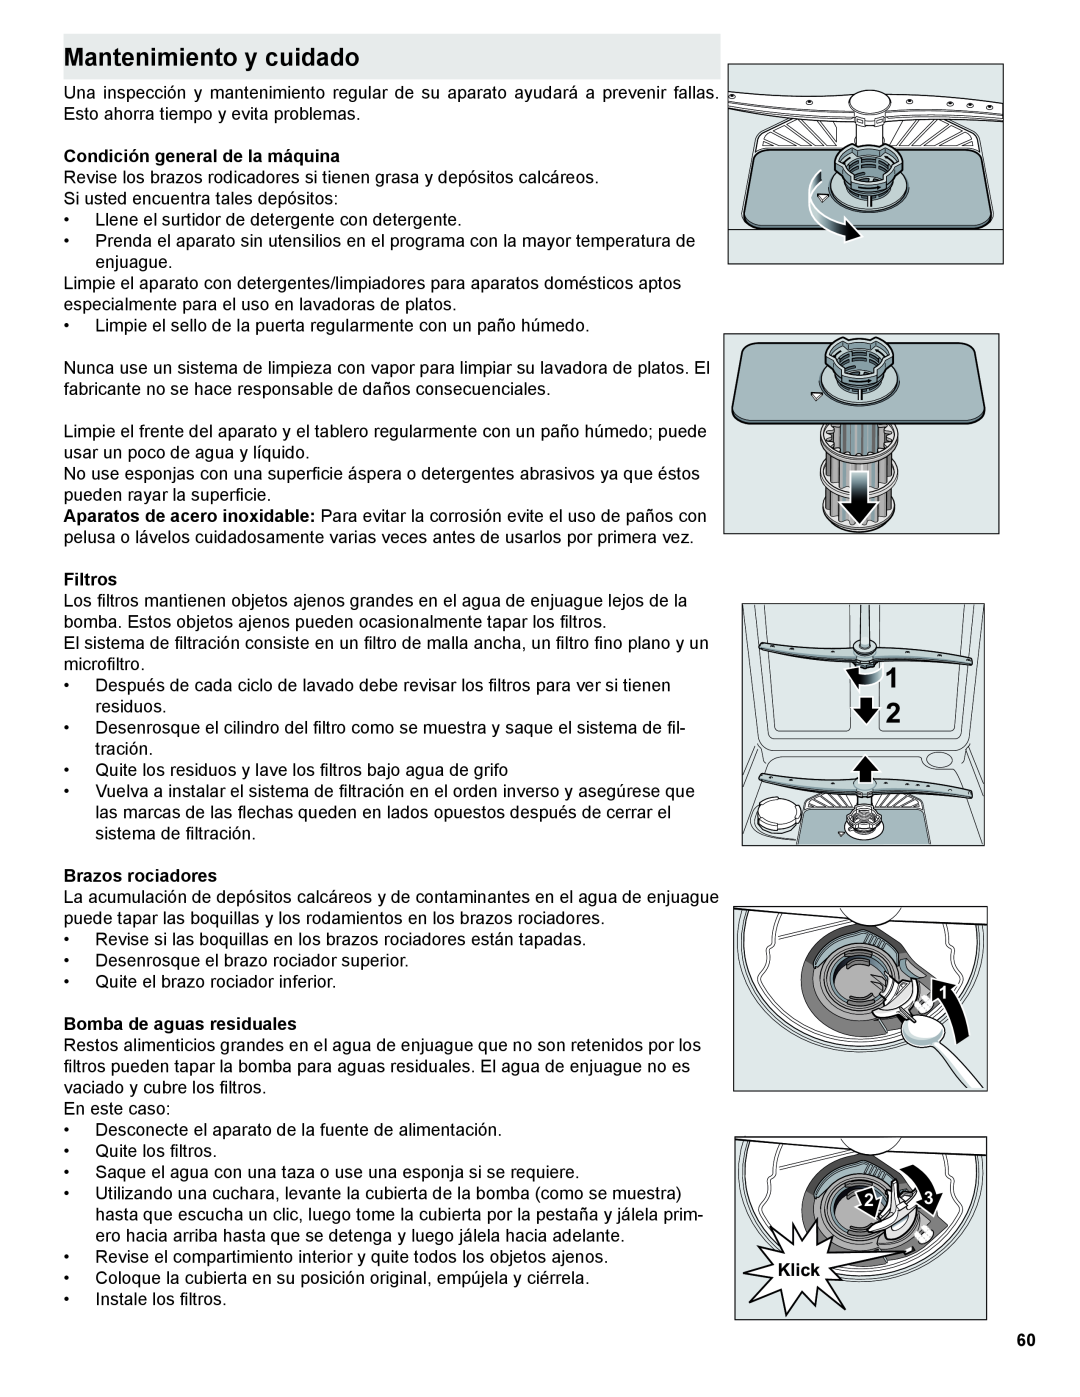 Thermador Dishwasher manual Mantenimiento y cuidado 